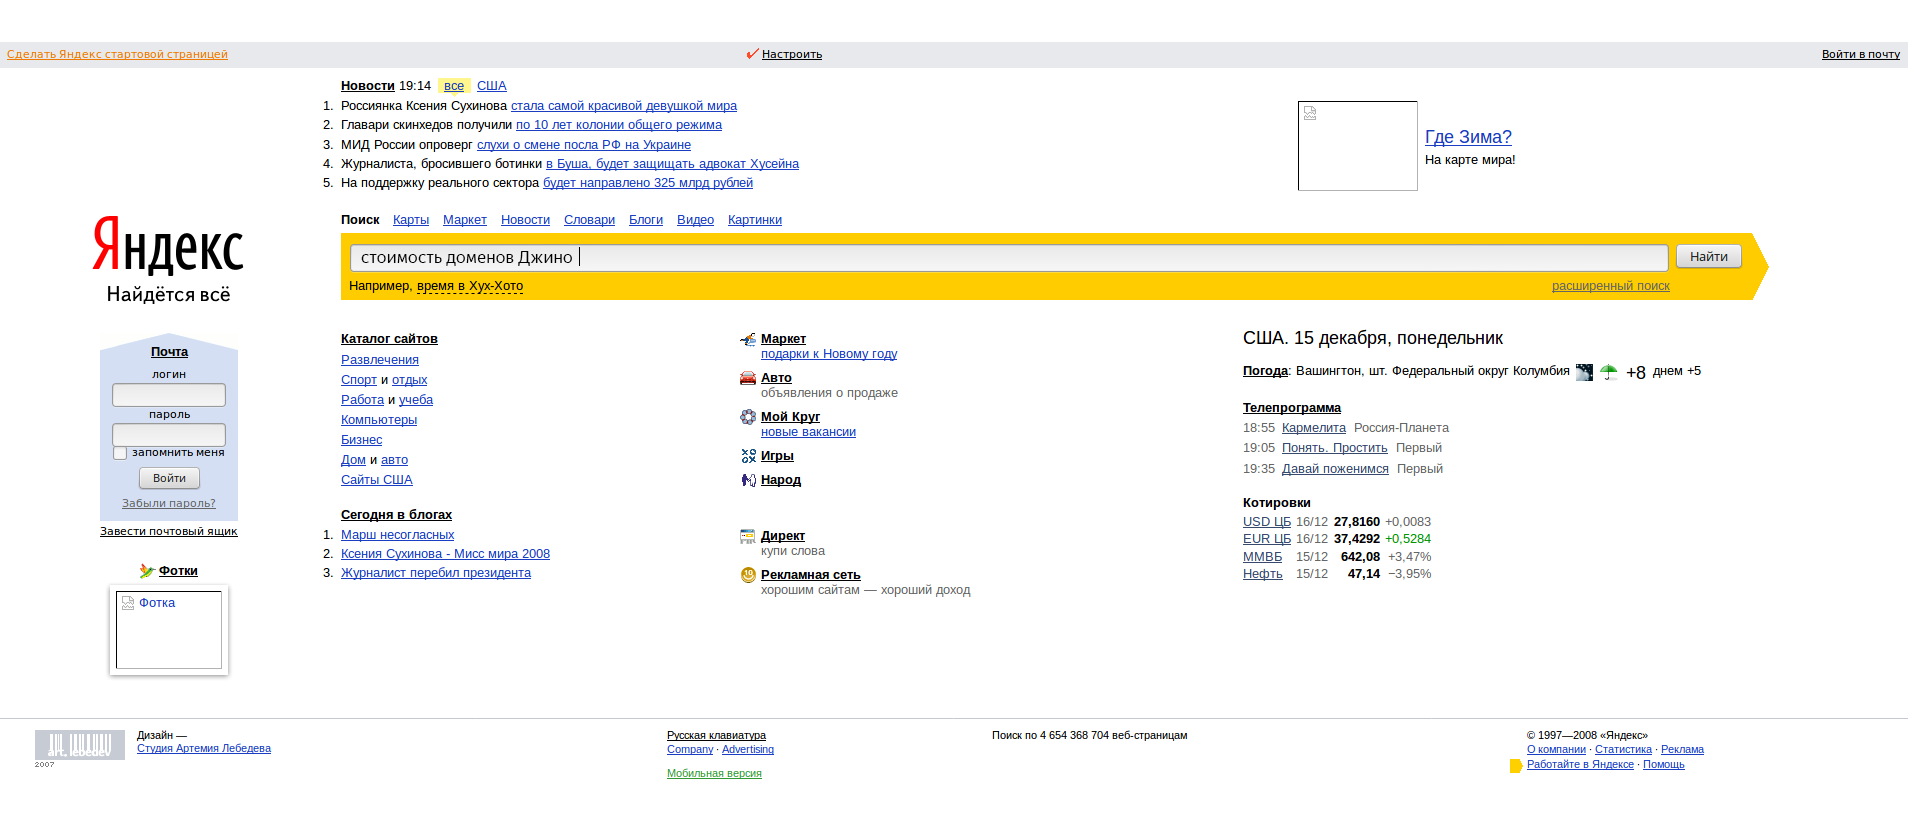 Как сделать новости на главной странице яндекса. Главная страница Яндекса в 1998 году. Скриншот главной страницы Яндекса.